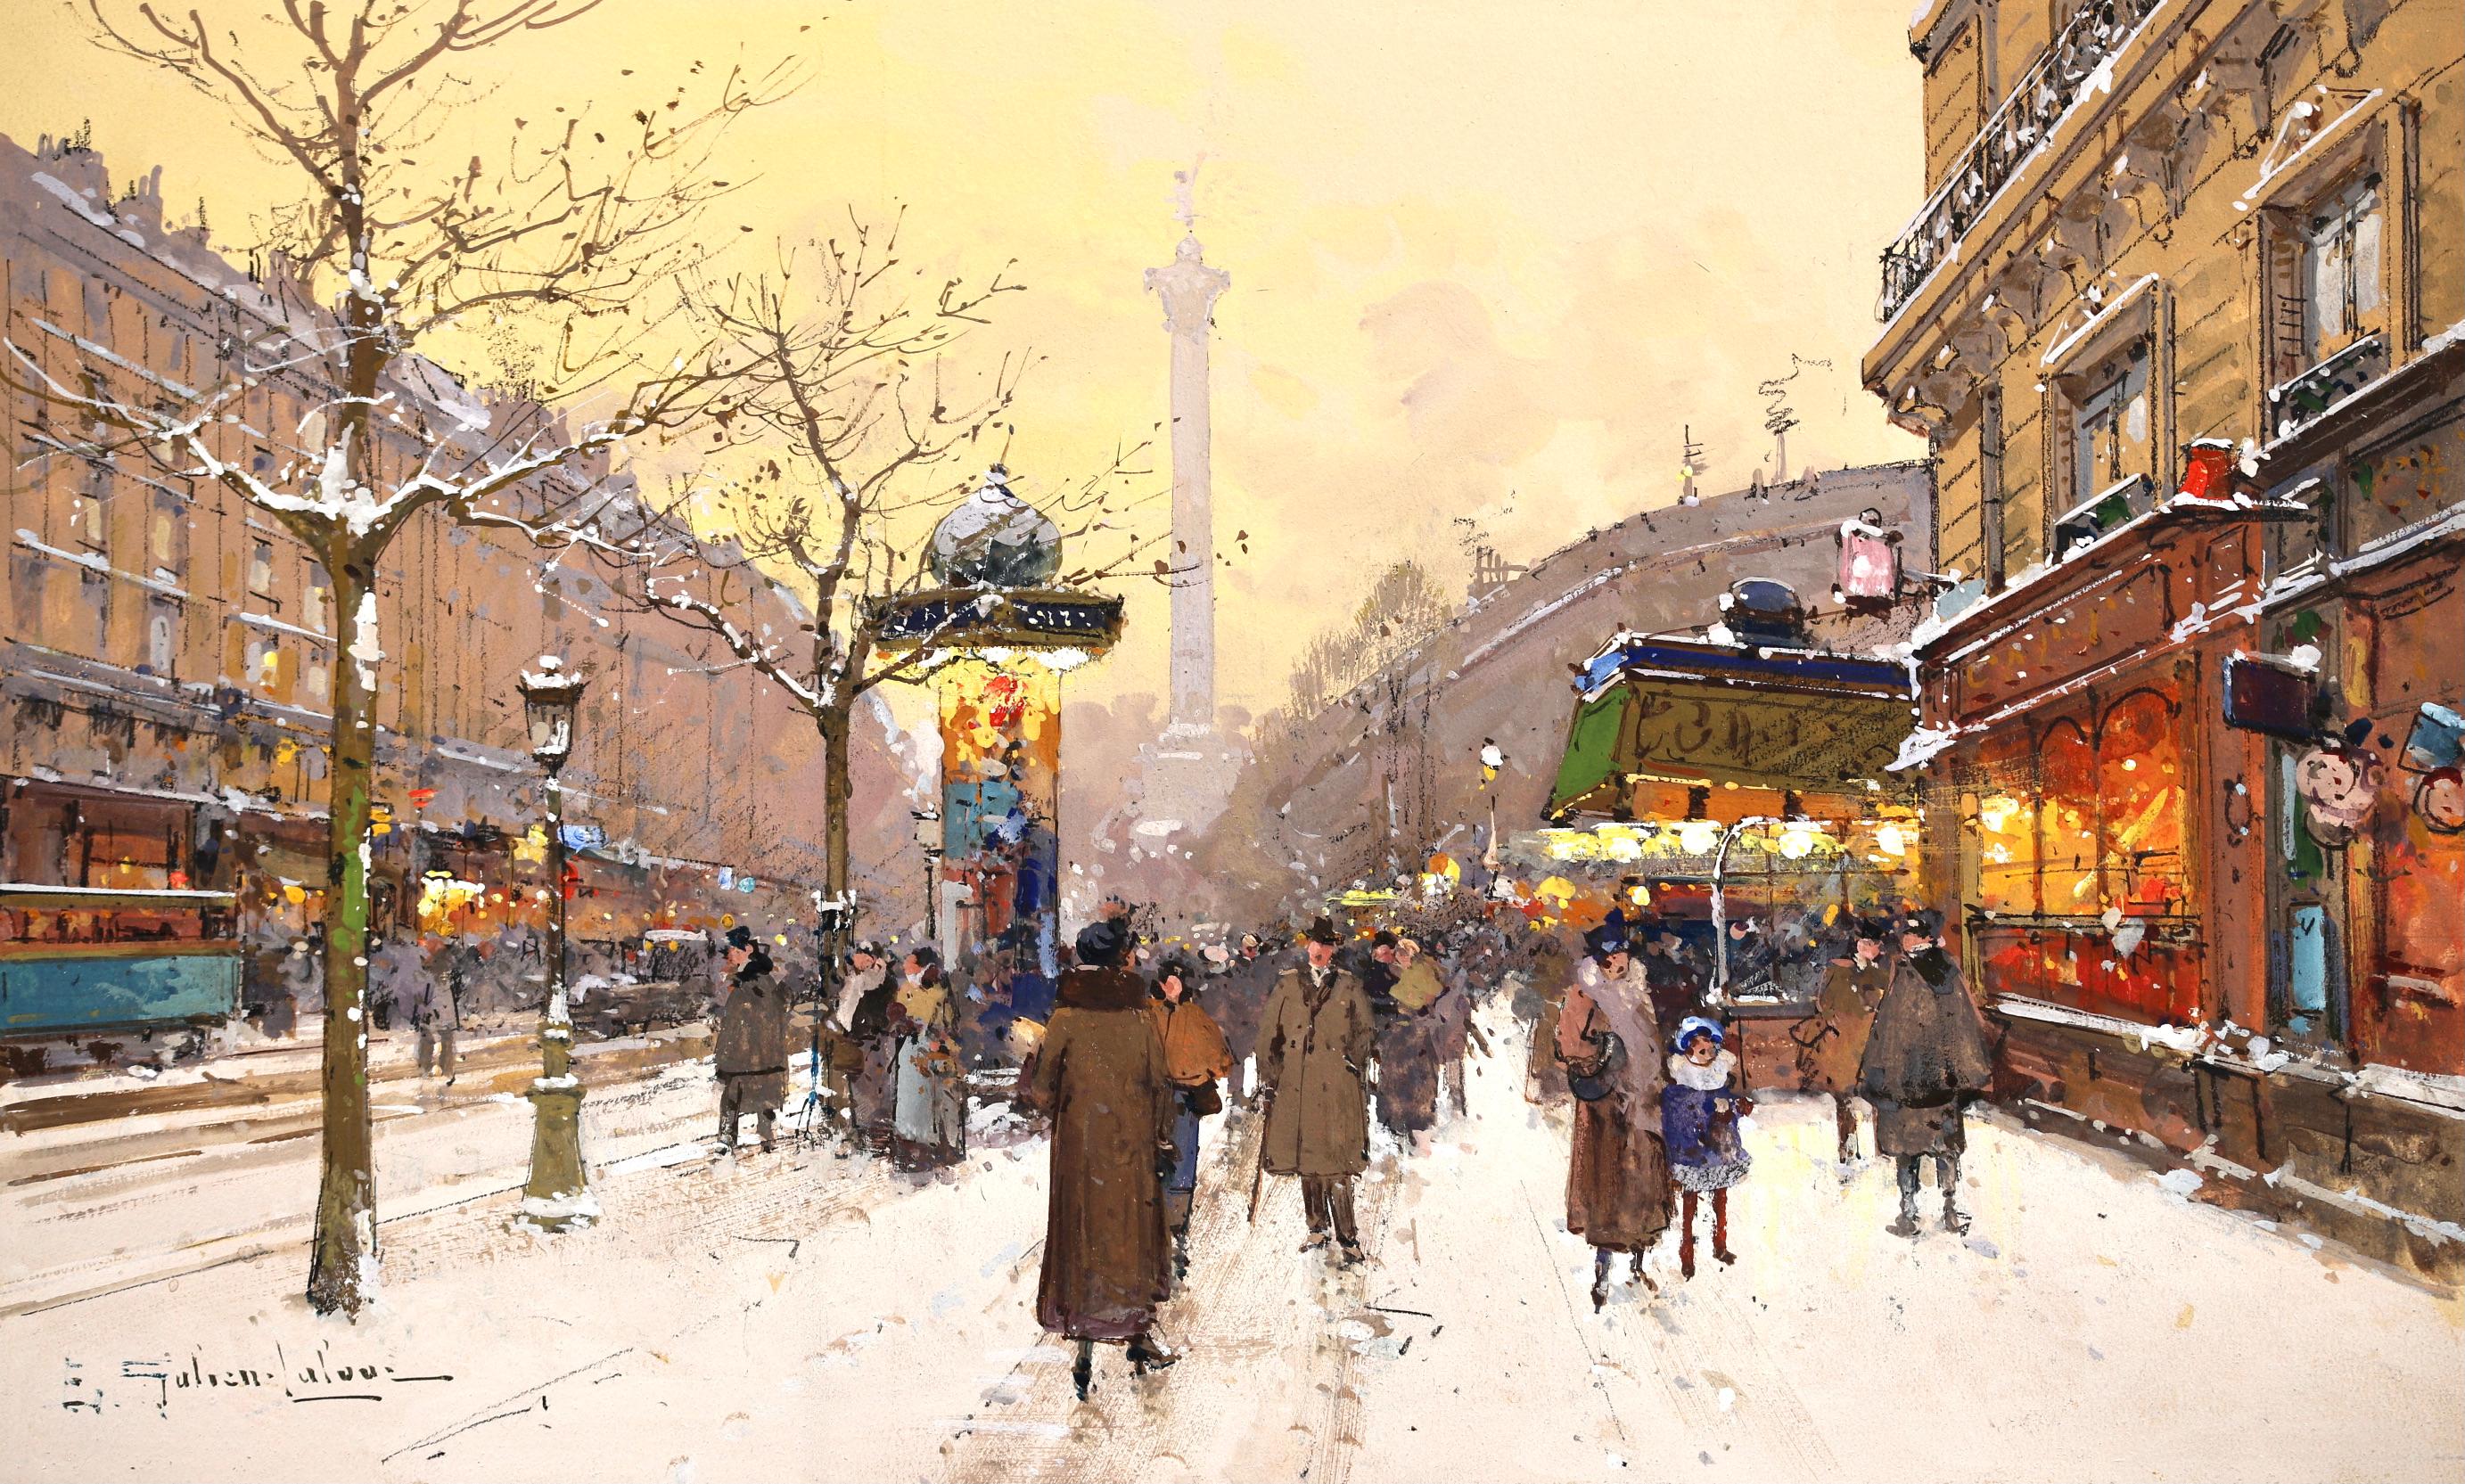 Place de la Bastille - Impressionist Snowy Cityscape by Eugene Galien-Laloue